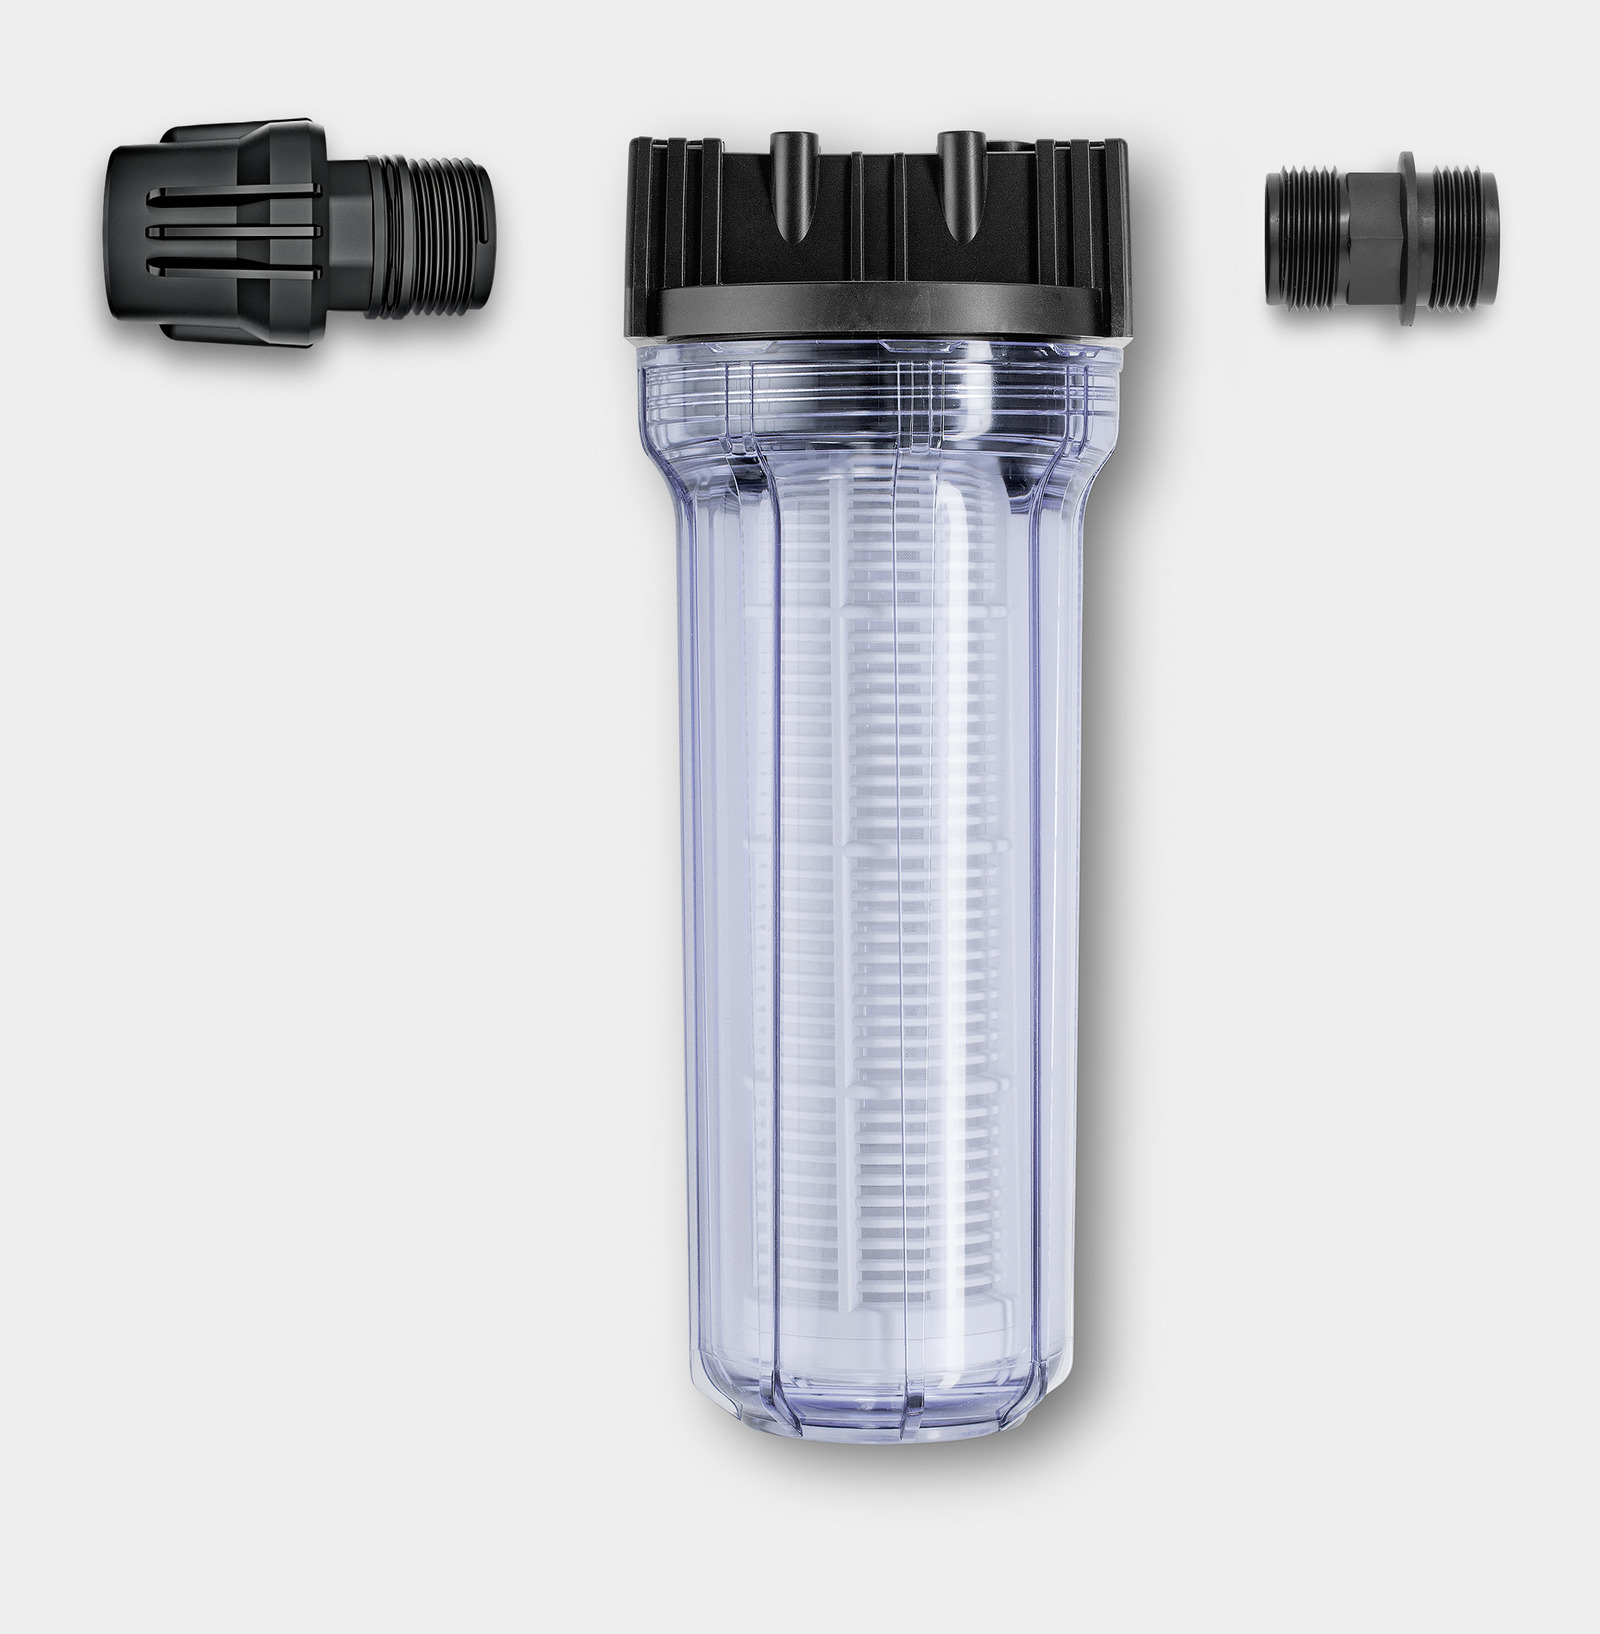 Фильтр тонкой очистки керхер. Karcher фильтр для воды (2.642-794.0). Входной фильтр воды, 1/2"-1/2" Tecomec. Фильтр входной Karcher. Фильтр водяной входной для АВД, 1/2"-1/2" 150 Mic (m-mof0006).